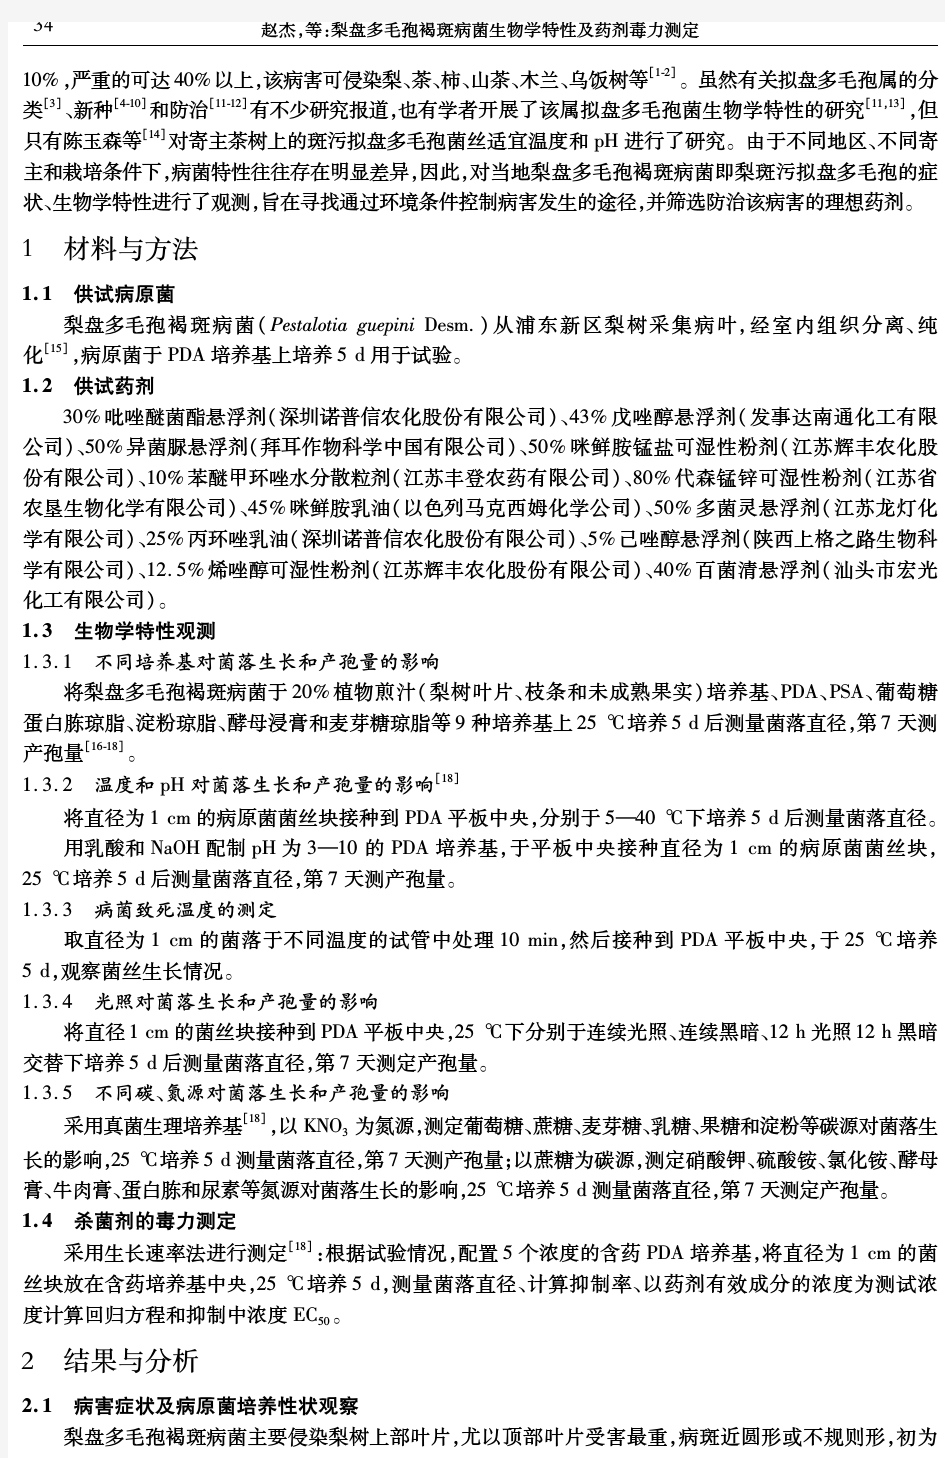 梨盘多毛孢褐斑病菌生物学特性及药剂毒力测定-上海市农业科学院知识